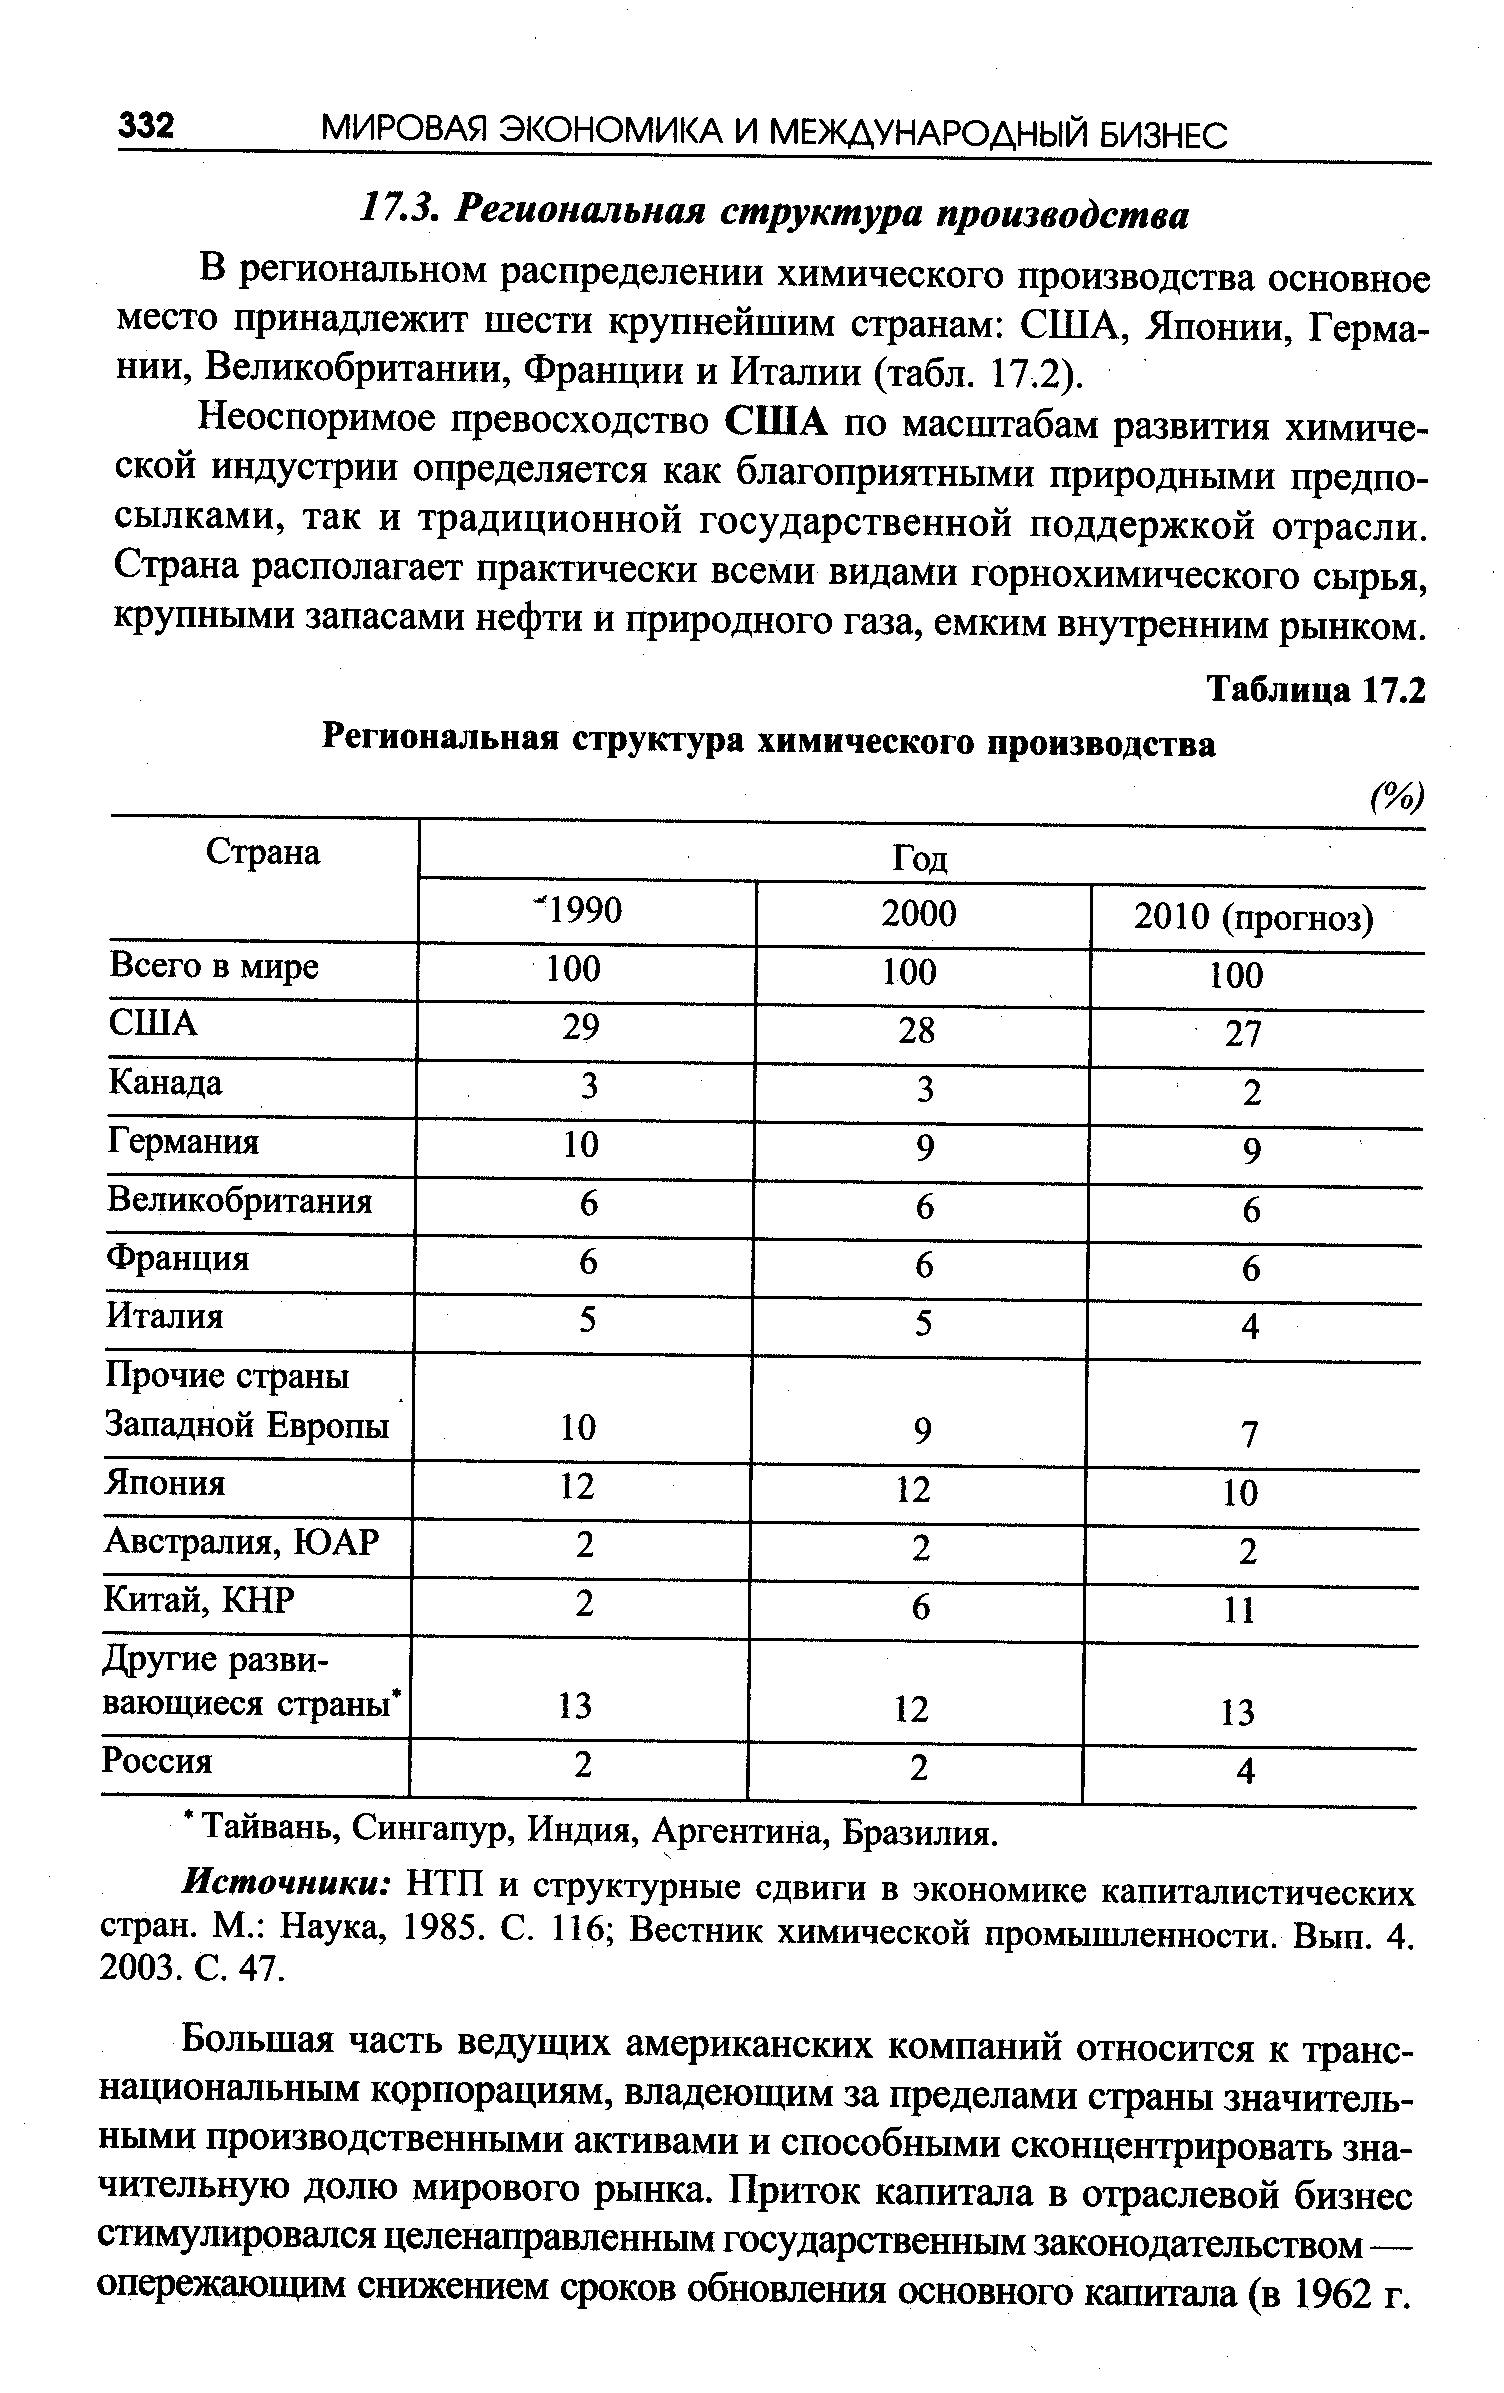 Таблица 17.2 Региональная структура химического производства
